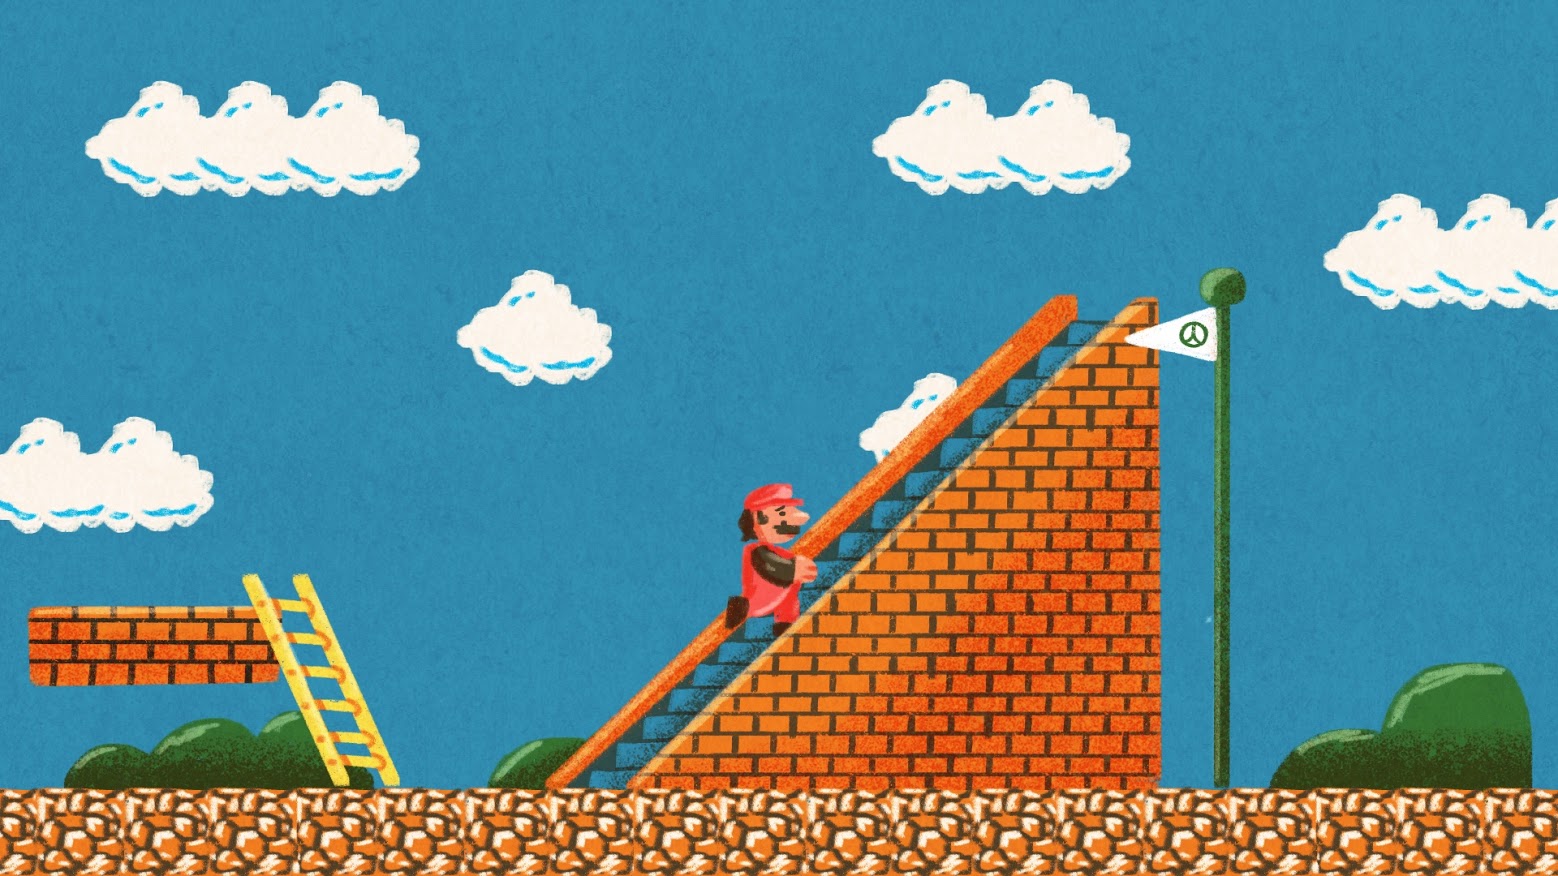 Mario takes an escalator